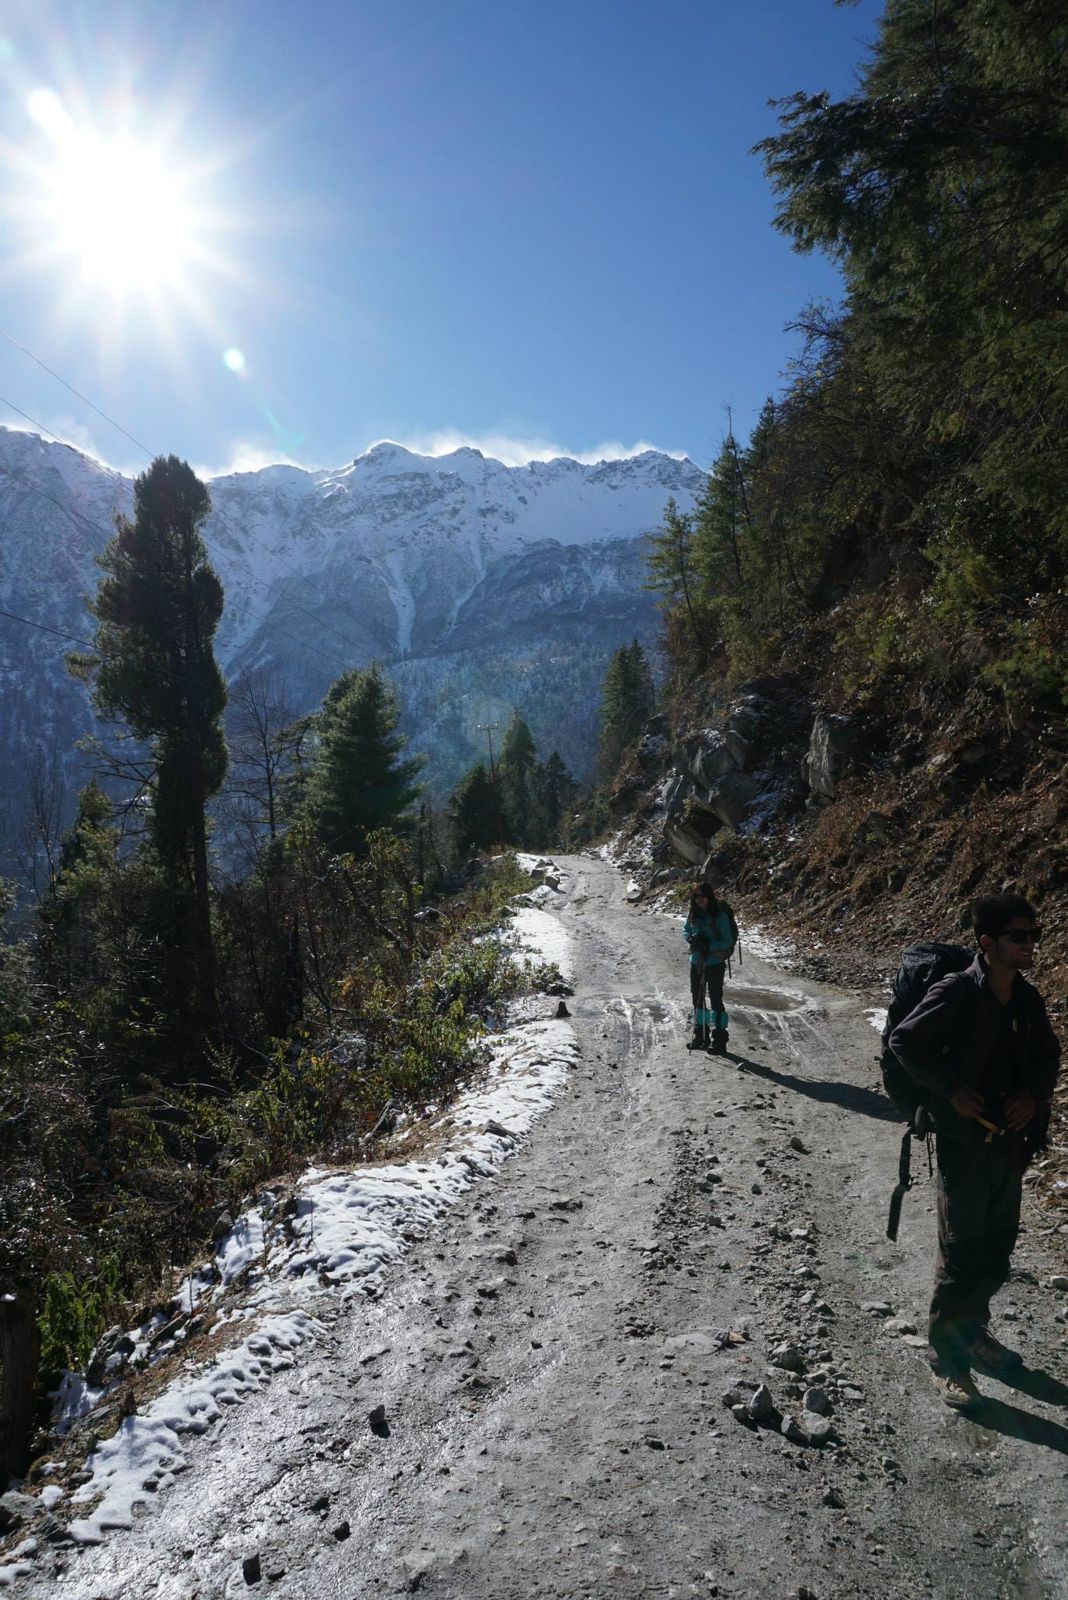 Trekking to Annapurna Circuit